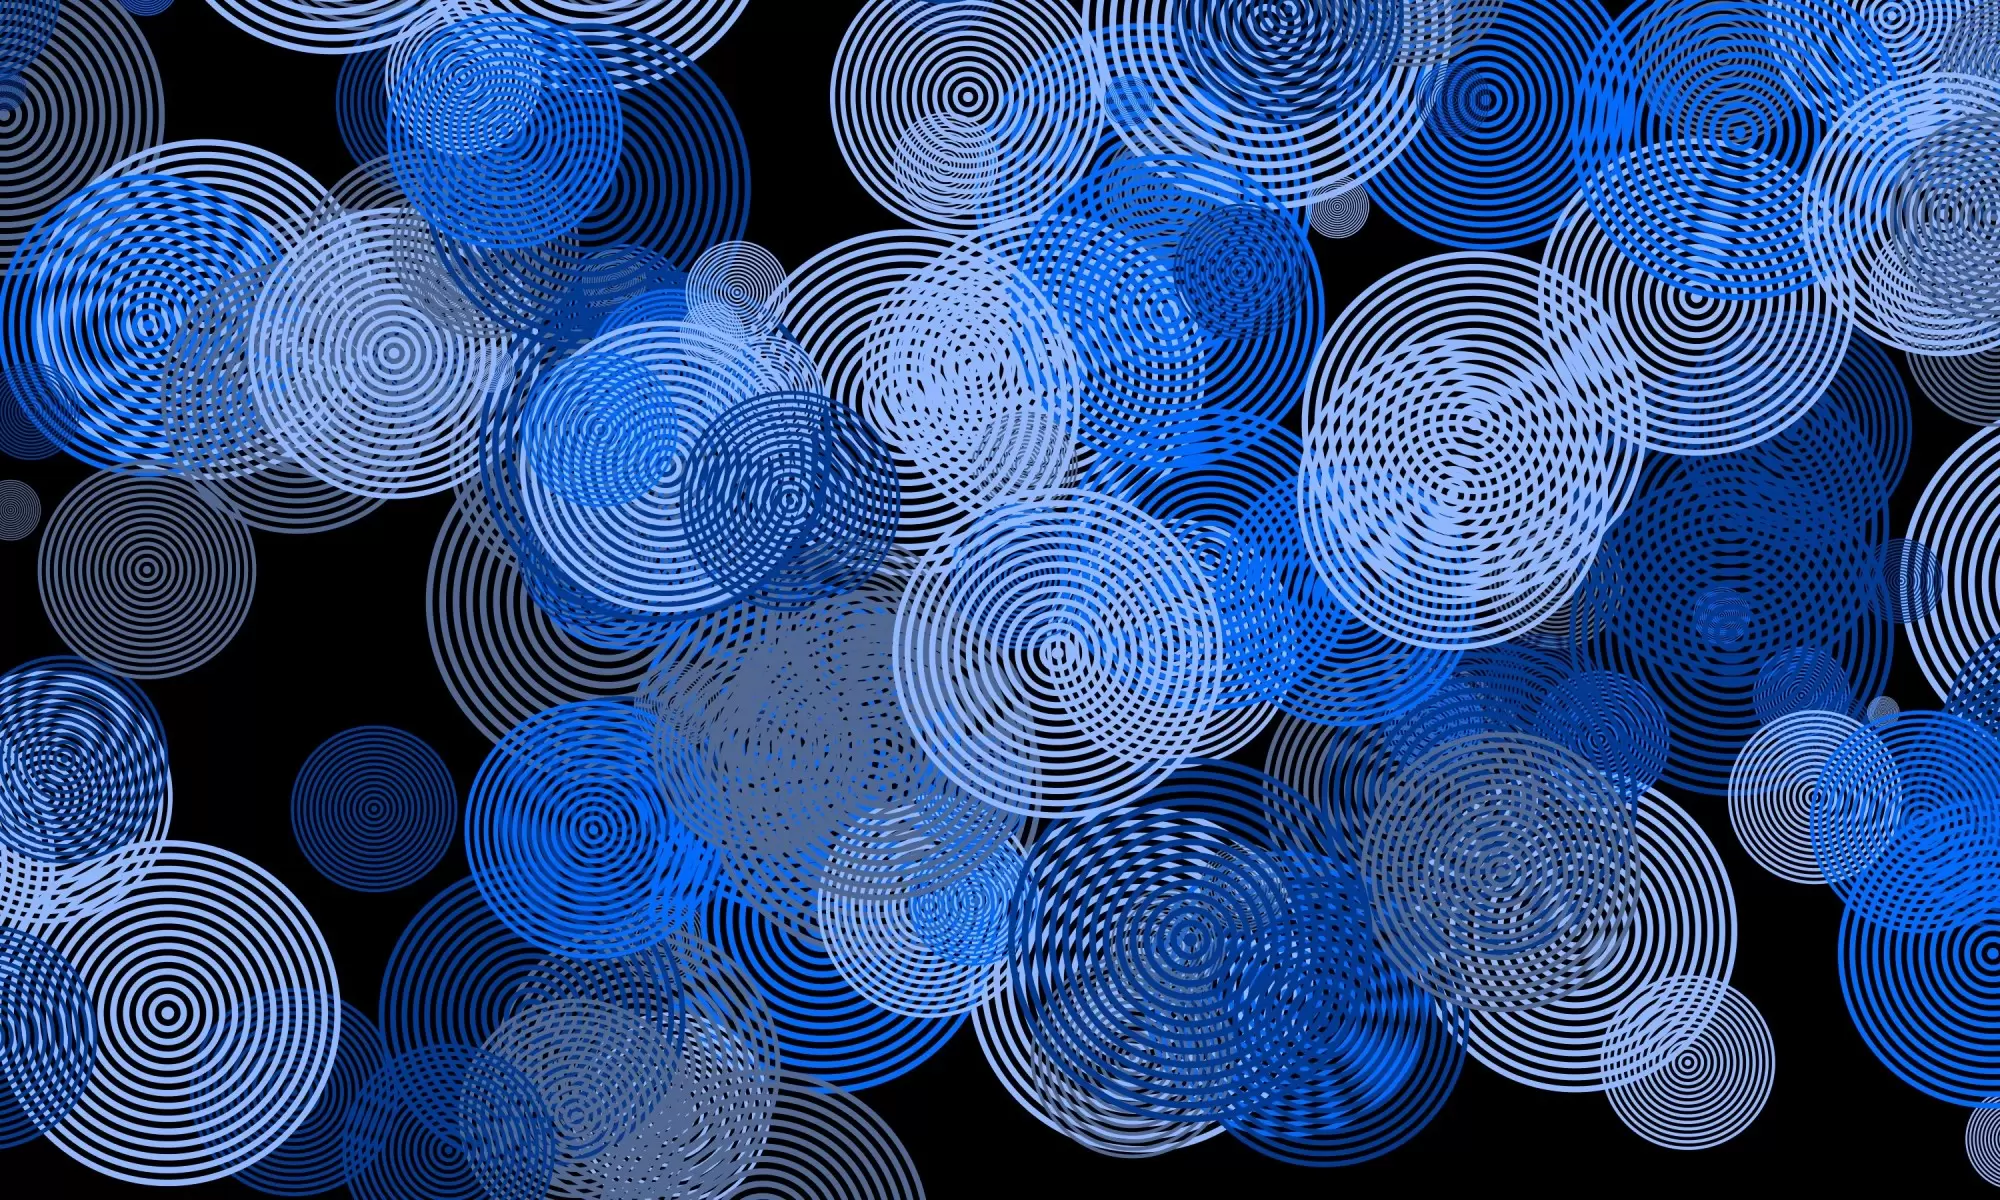 עיגולים כחולים - Artpicked - תמונות בועות גלים ומים אבסטרקט מודרני  - מק''ט: 332536